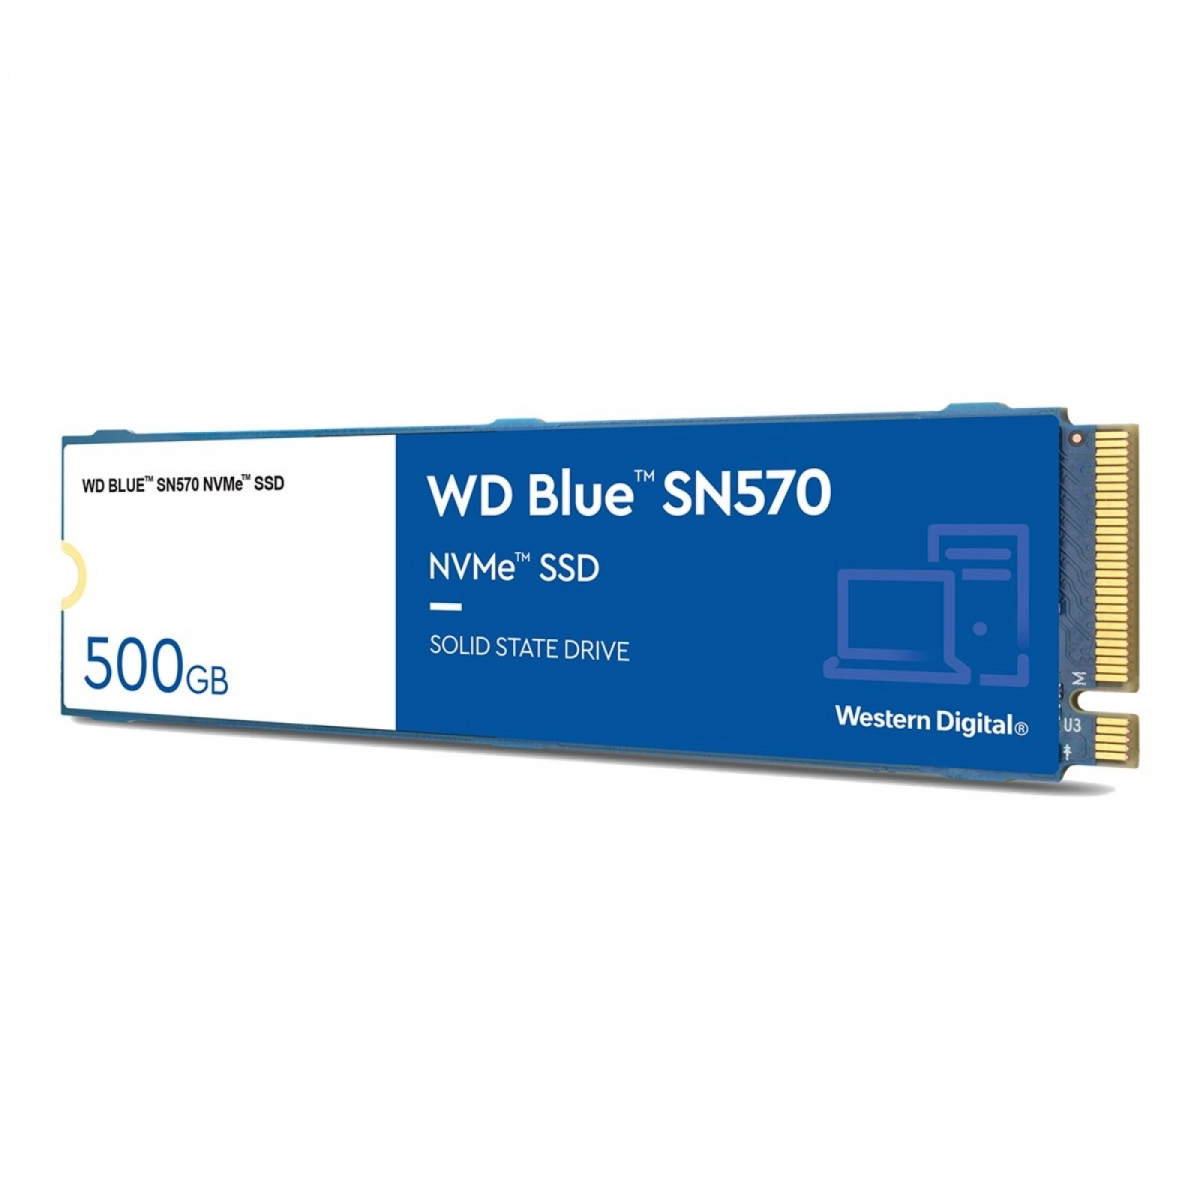 WD Blue SN570 500GB NVMe SSD Fast PCIe 3.0 x4 (WDS500G3B0C)